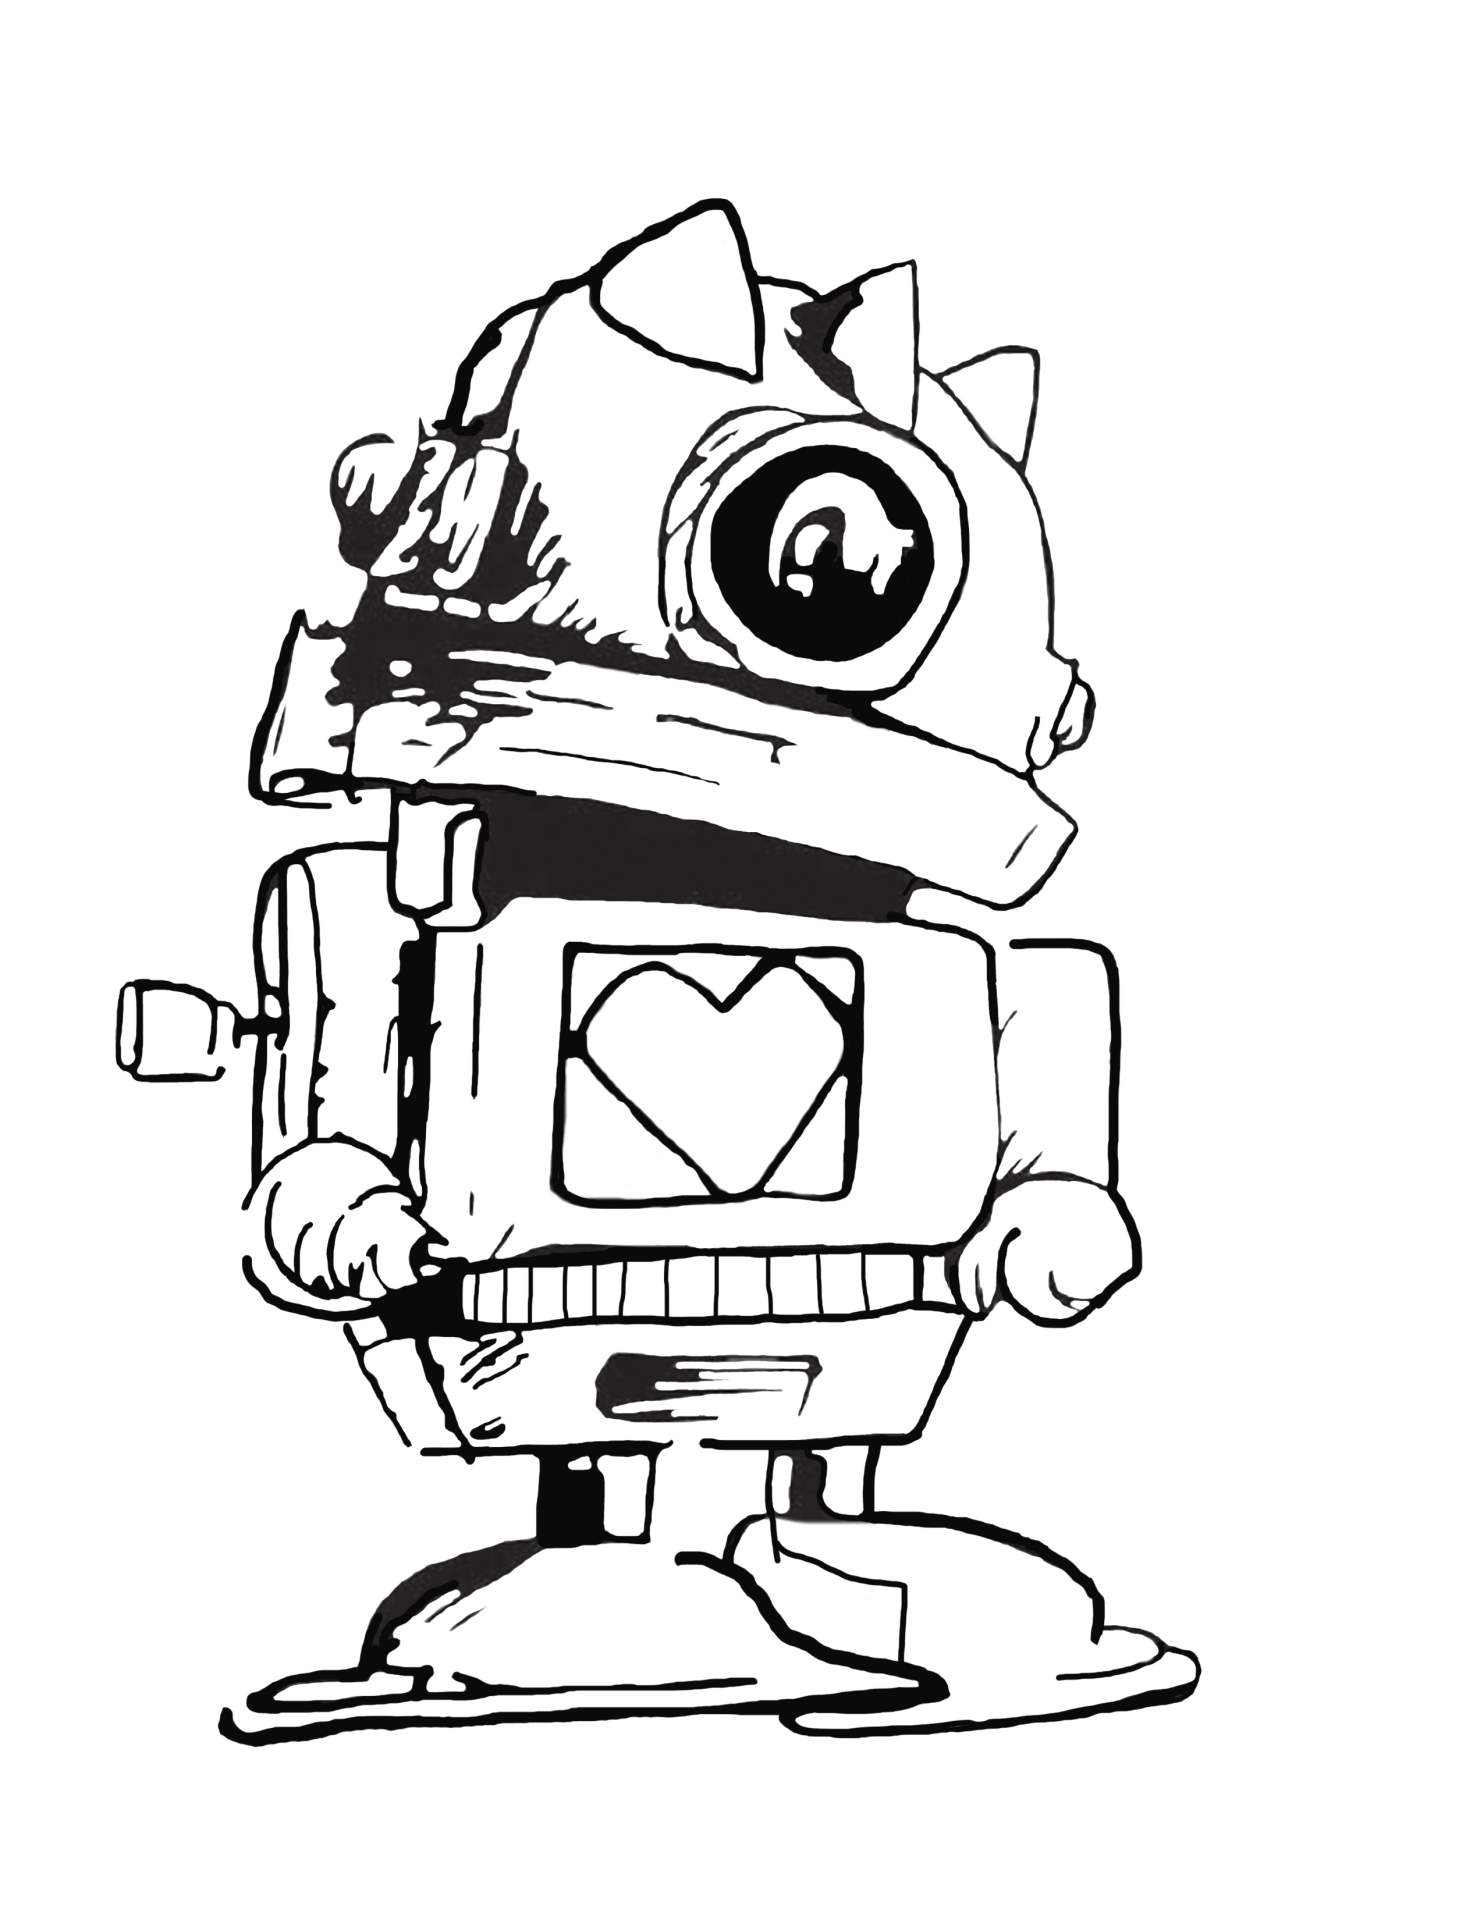 Robot 1